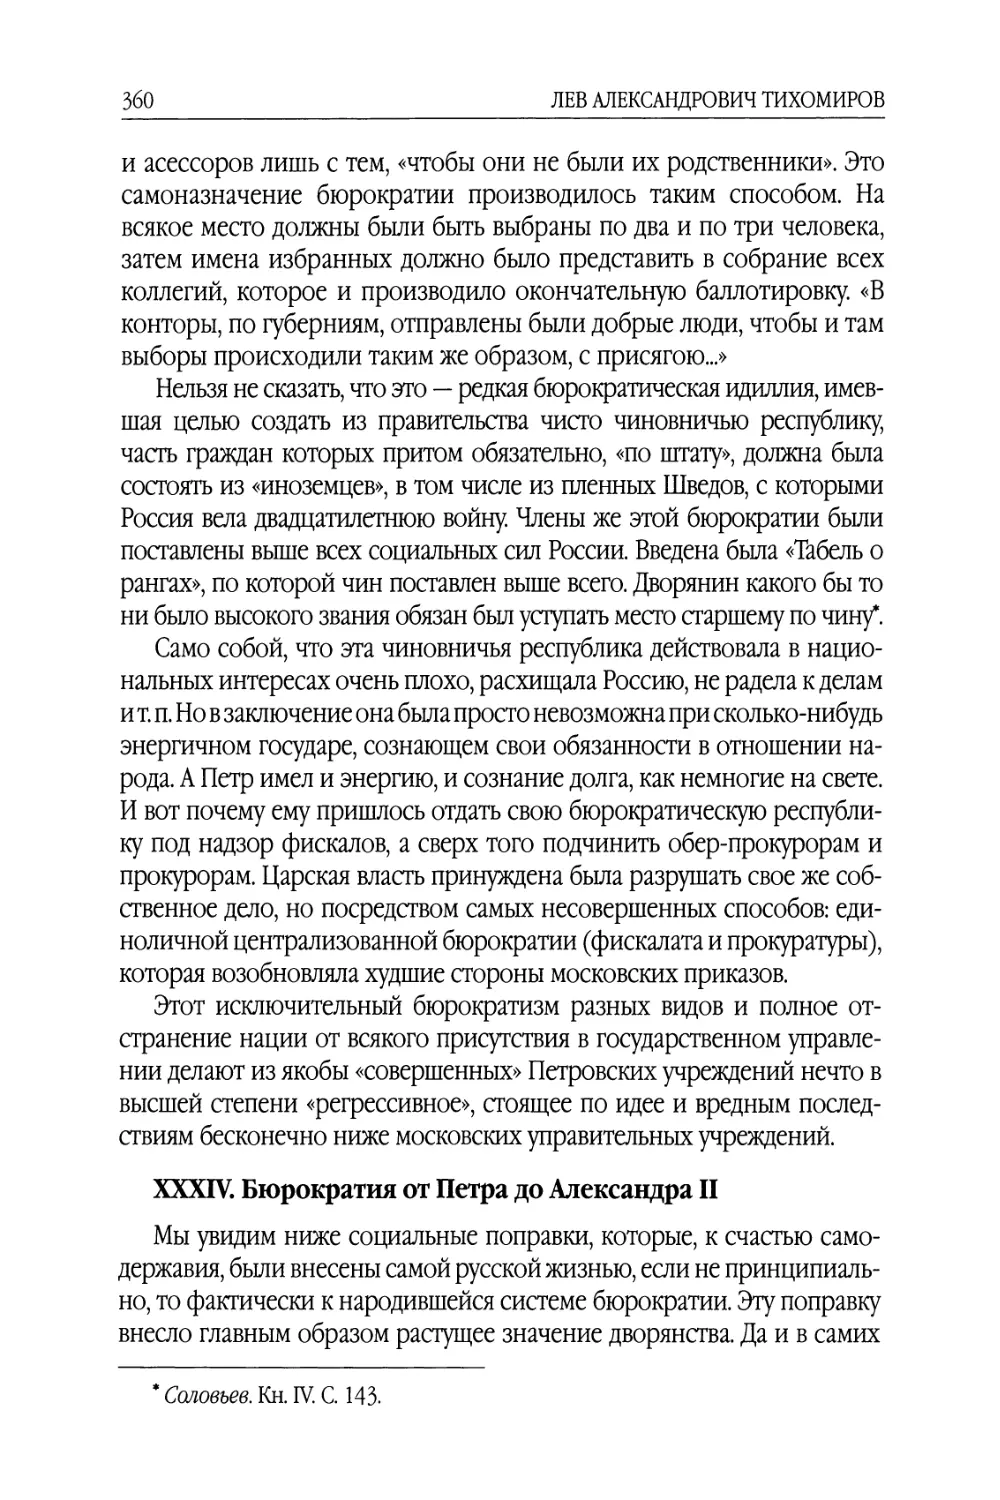 XXXIV. Бюрократия от Петра до Александра II